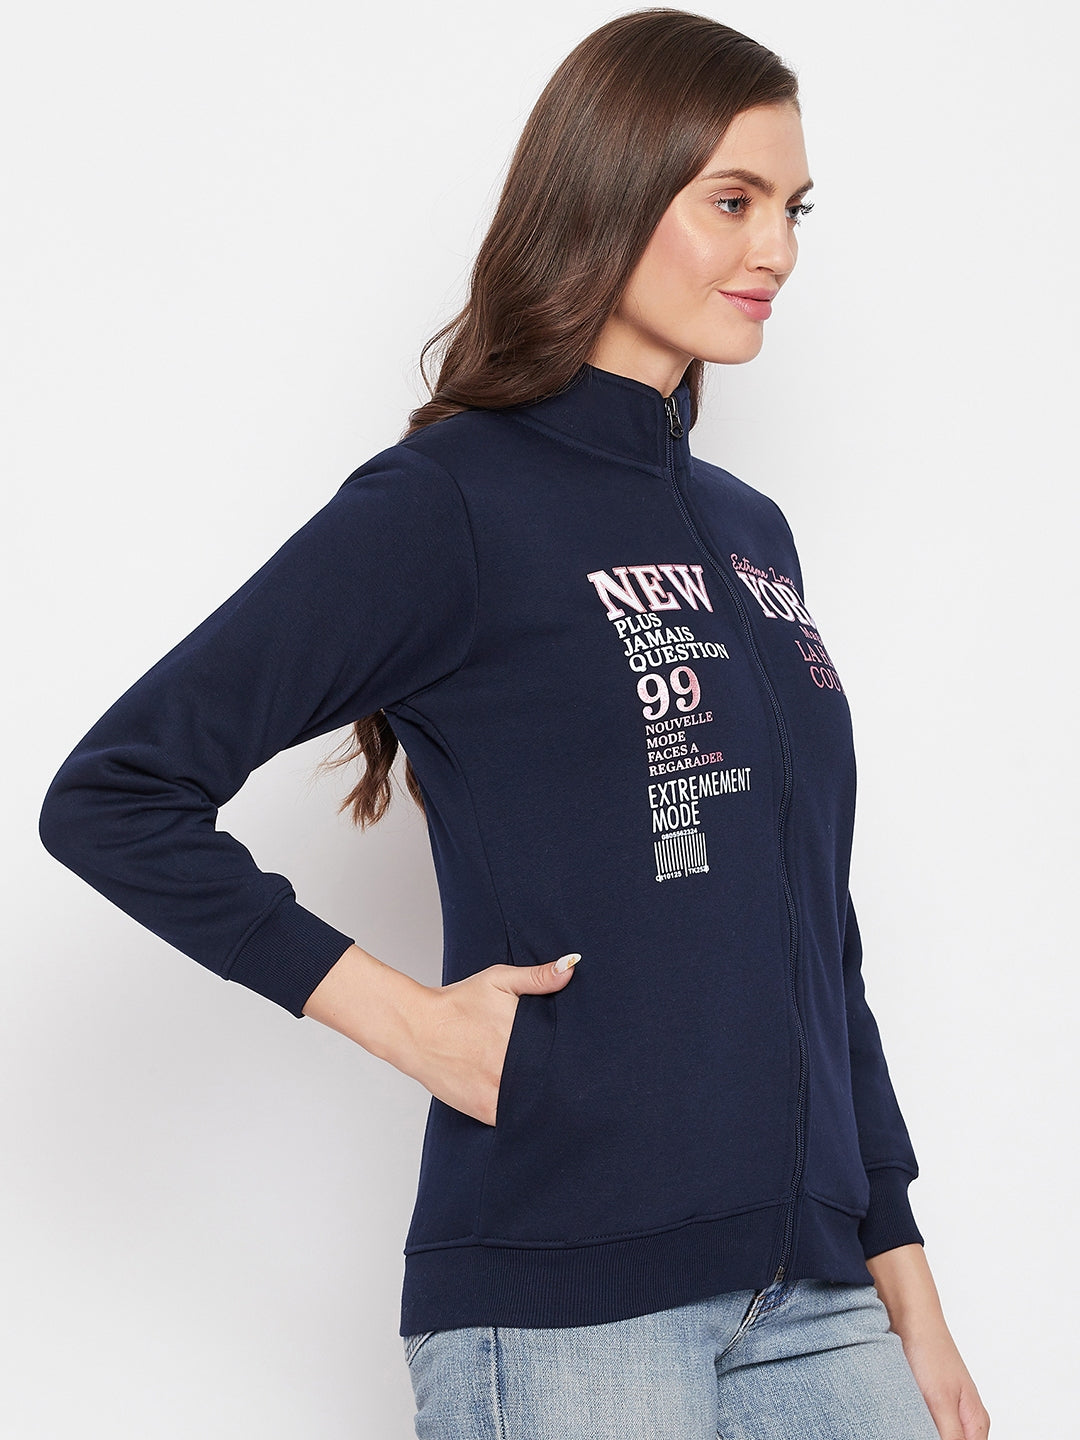 Livfree Women's Mock Collar Full Sleeves Solid Sweatshirt - Navy (Zipper)